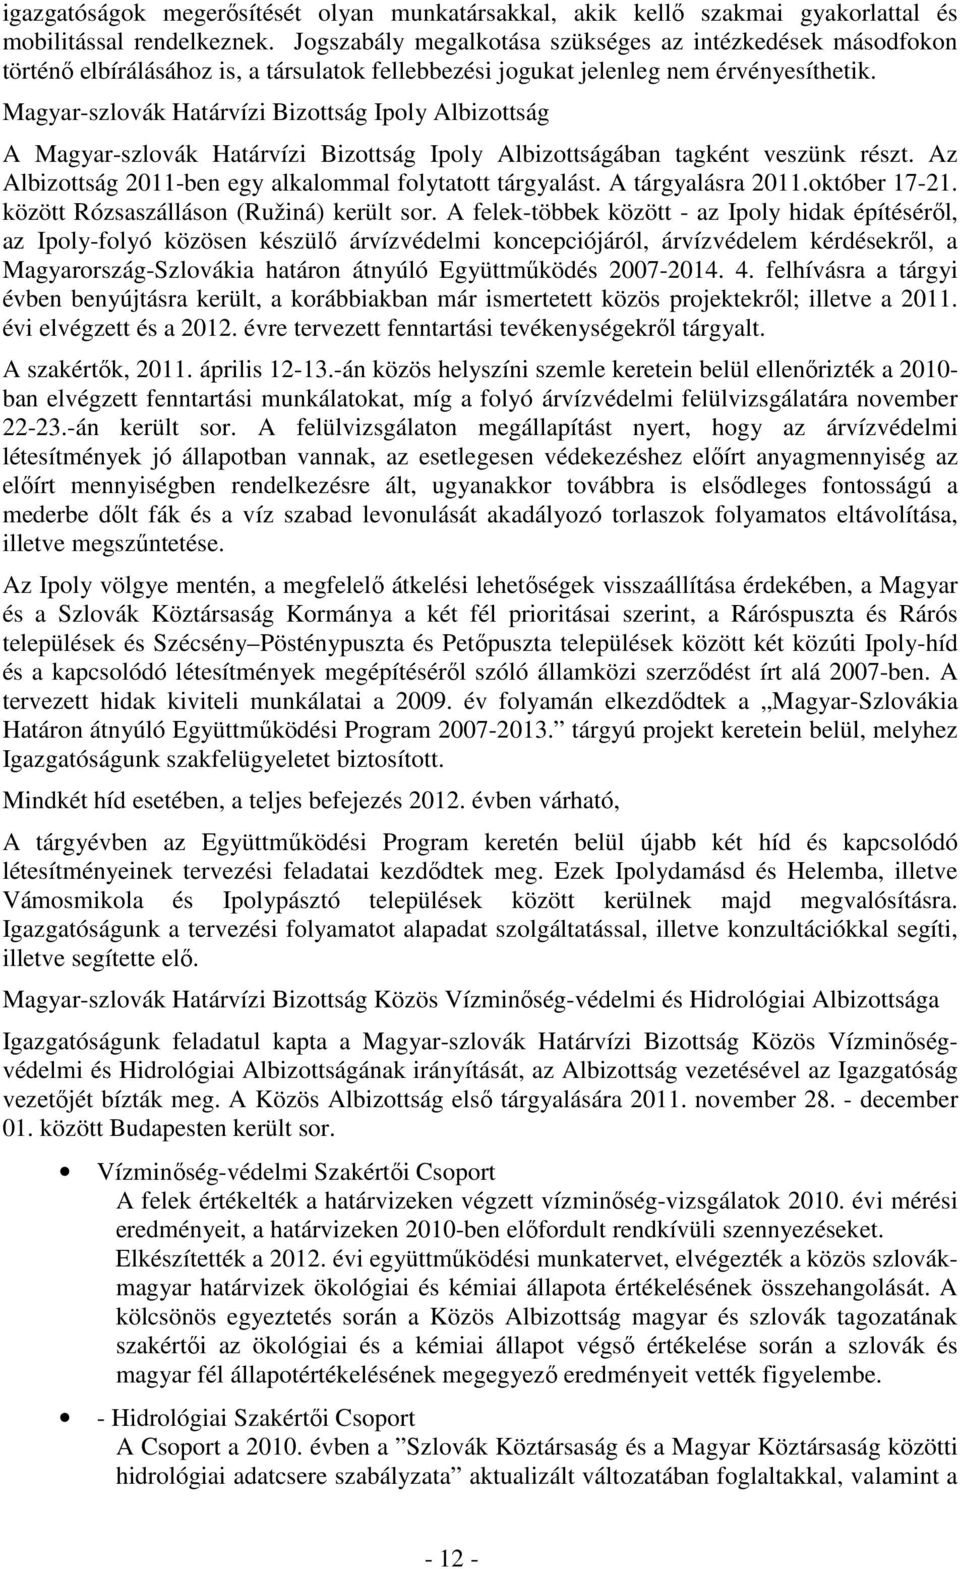 Magyar-szlovák Határvízi Bizottság Ipoly Albizottság A Magyar-szlovák Határvízi Bizottság Ipoly Albizottságában tagként veszünk részt. Az Albizottság 2011-ben egy alkalommal folytatott tárgyalást.